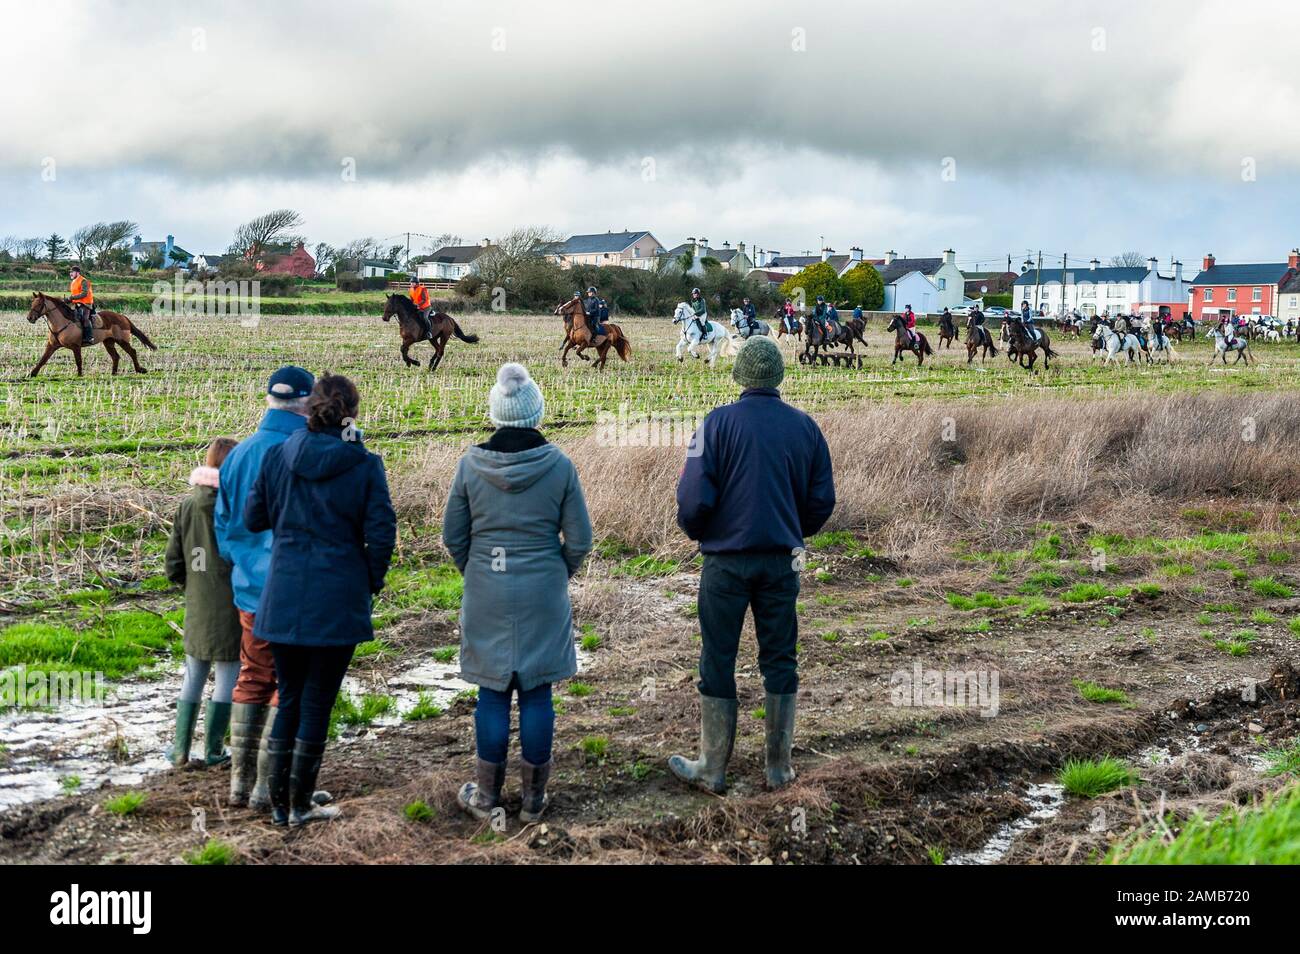 Butlerstown, West Cork, Irland. Januar 2020. Die jährliche Carberry Hunt Butlerstown Fun Ride fand heute mit Hunderten von Pferden und Reitern statt. Kredit: Andy Gibson/Alamy Live News Stockfoto